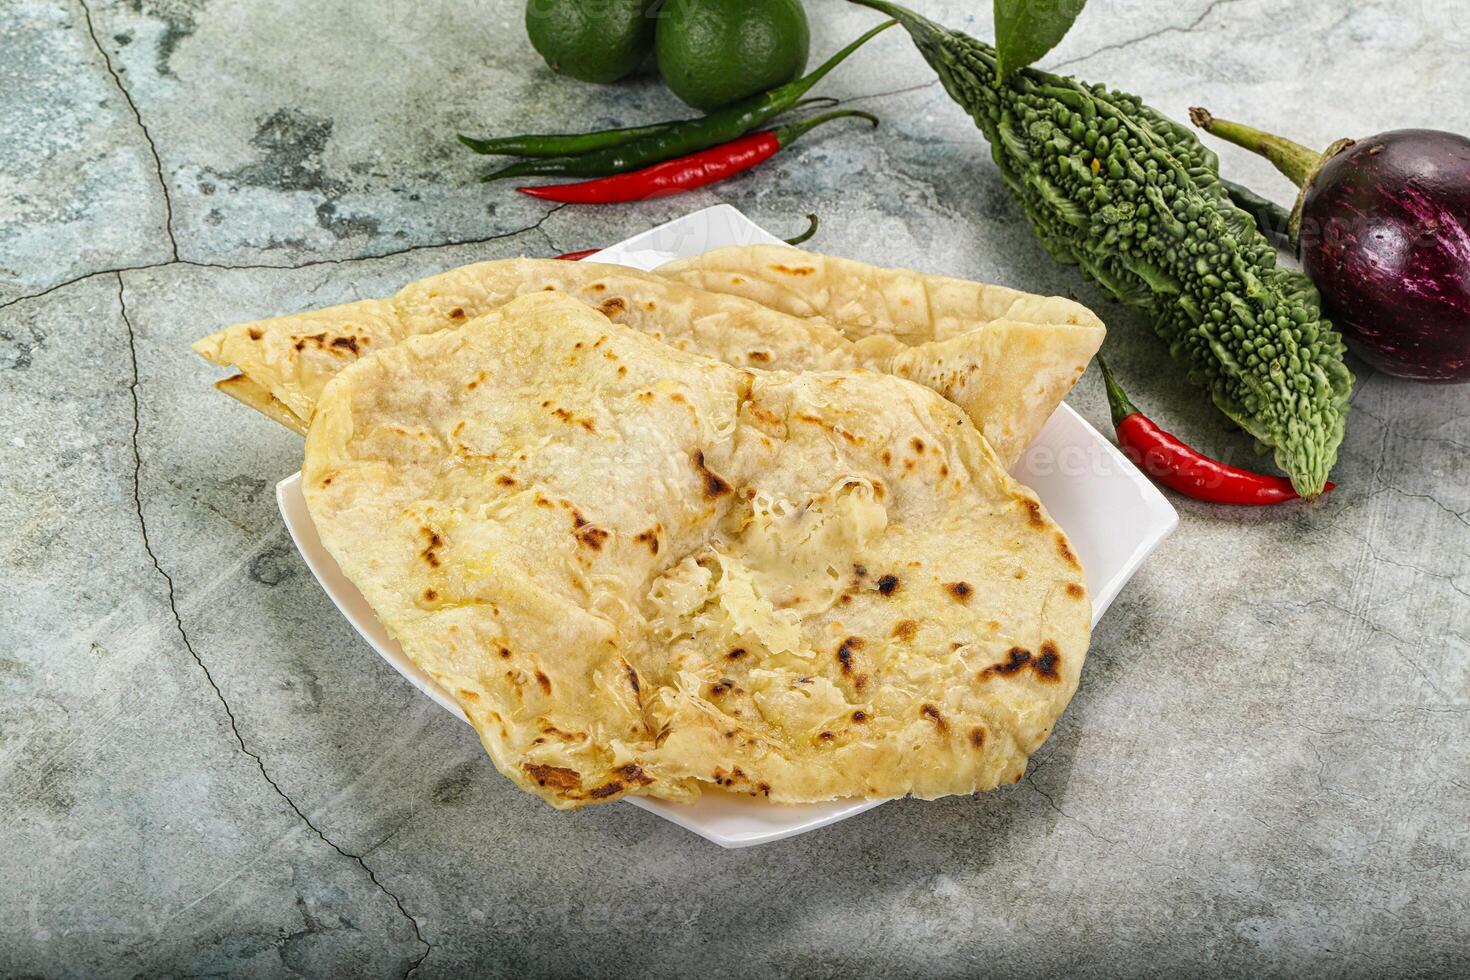 indisk tandori bröd - naan med ost foto